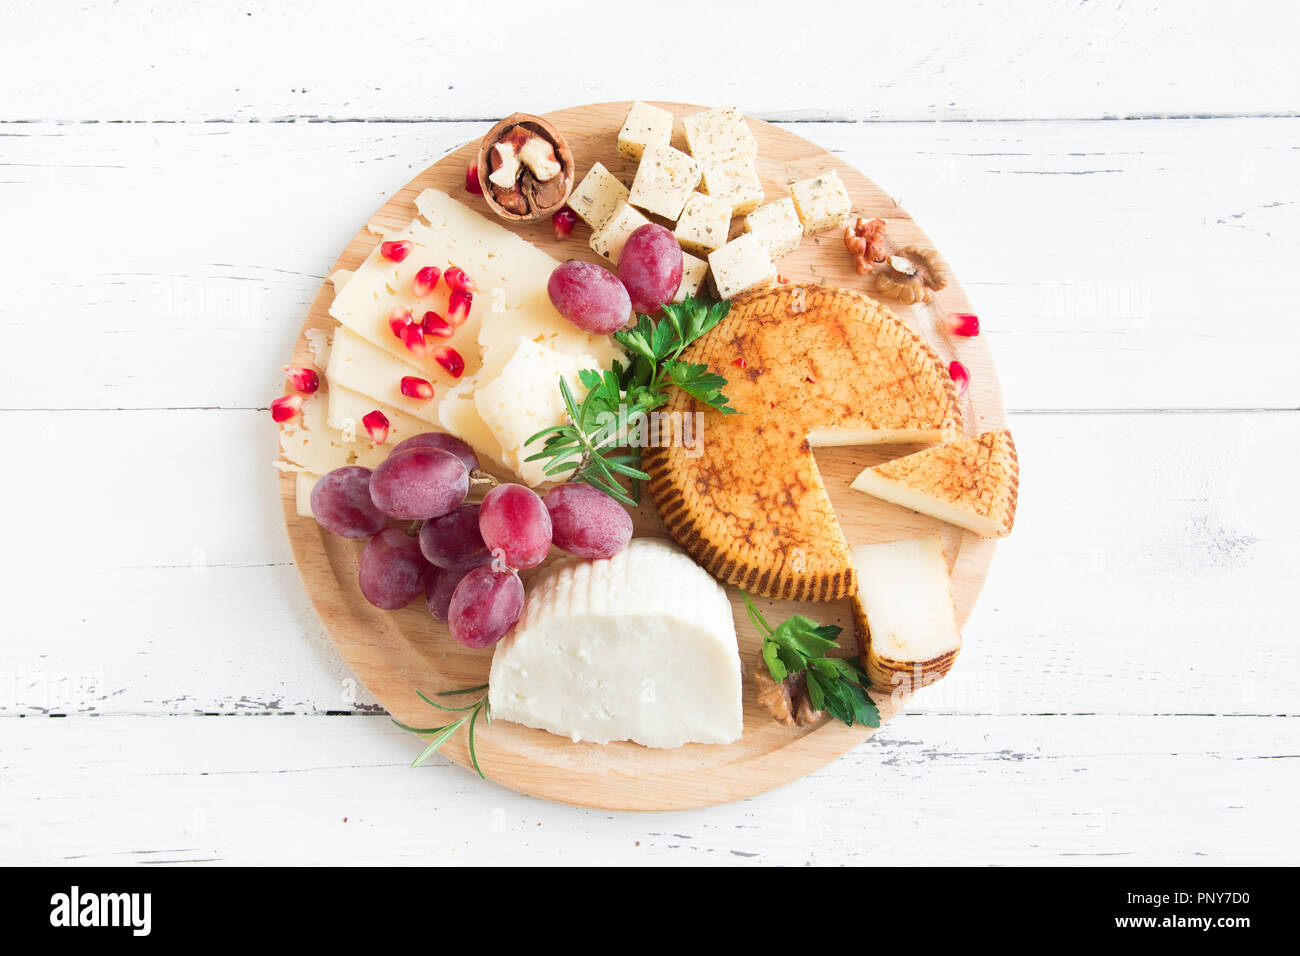 Käseplatte mit verschiedenen Käsesorten, Trauben, Nüsse auf weißem Hintergrund, kopieren. Italienischen Käse und Obstteller. Stockfoto